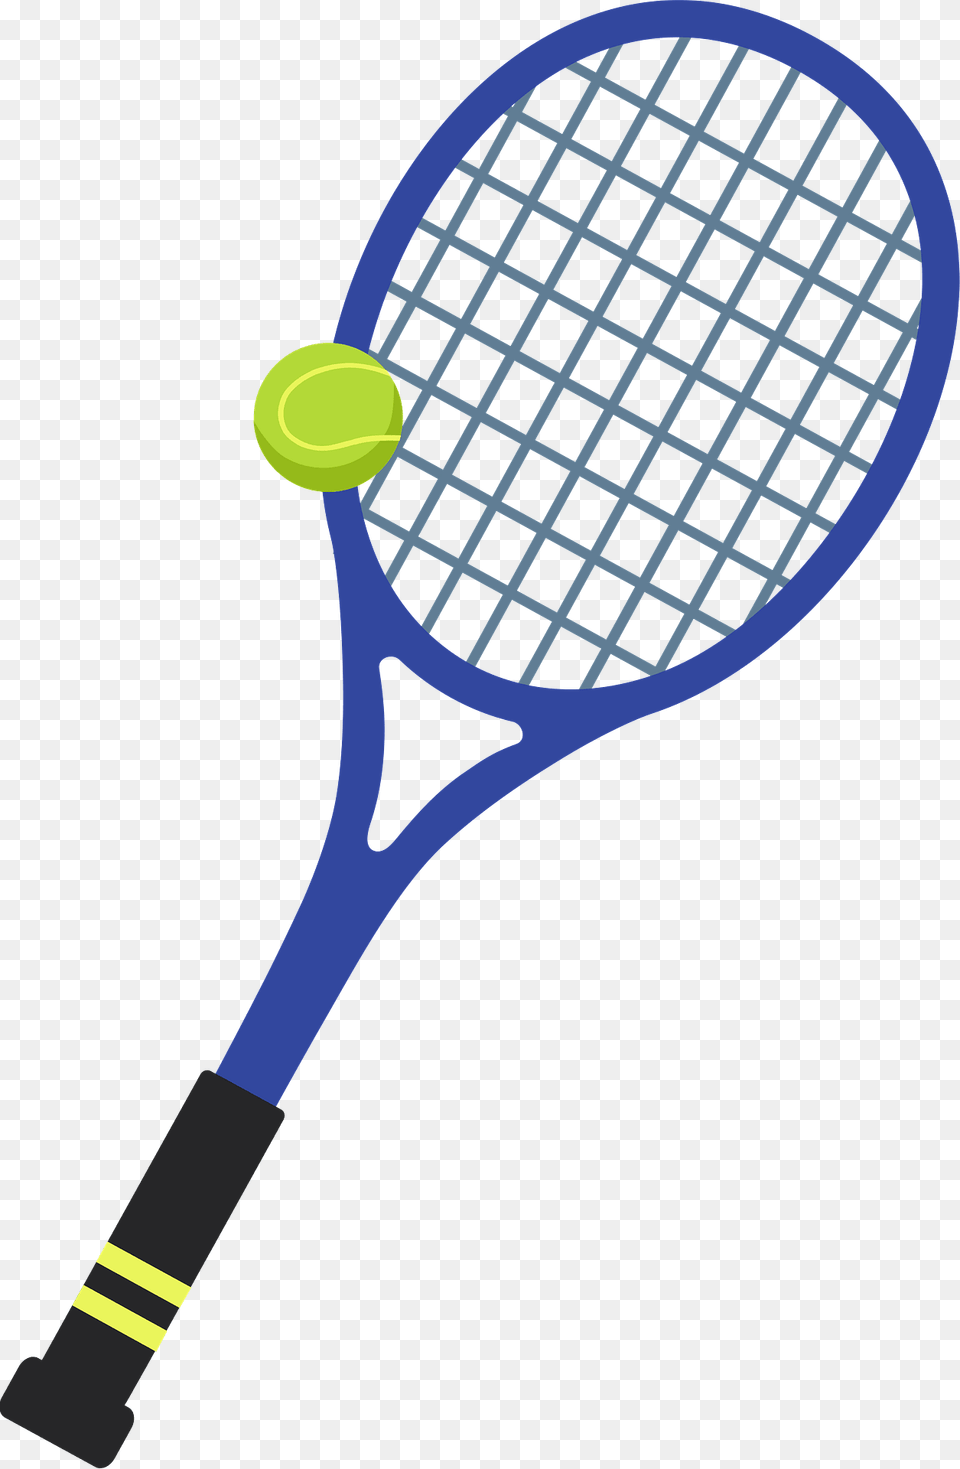 Tennis Racket Clipart, Ball, Sport, Tennis Ball, Tennis Racket Png Image